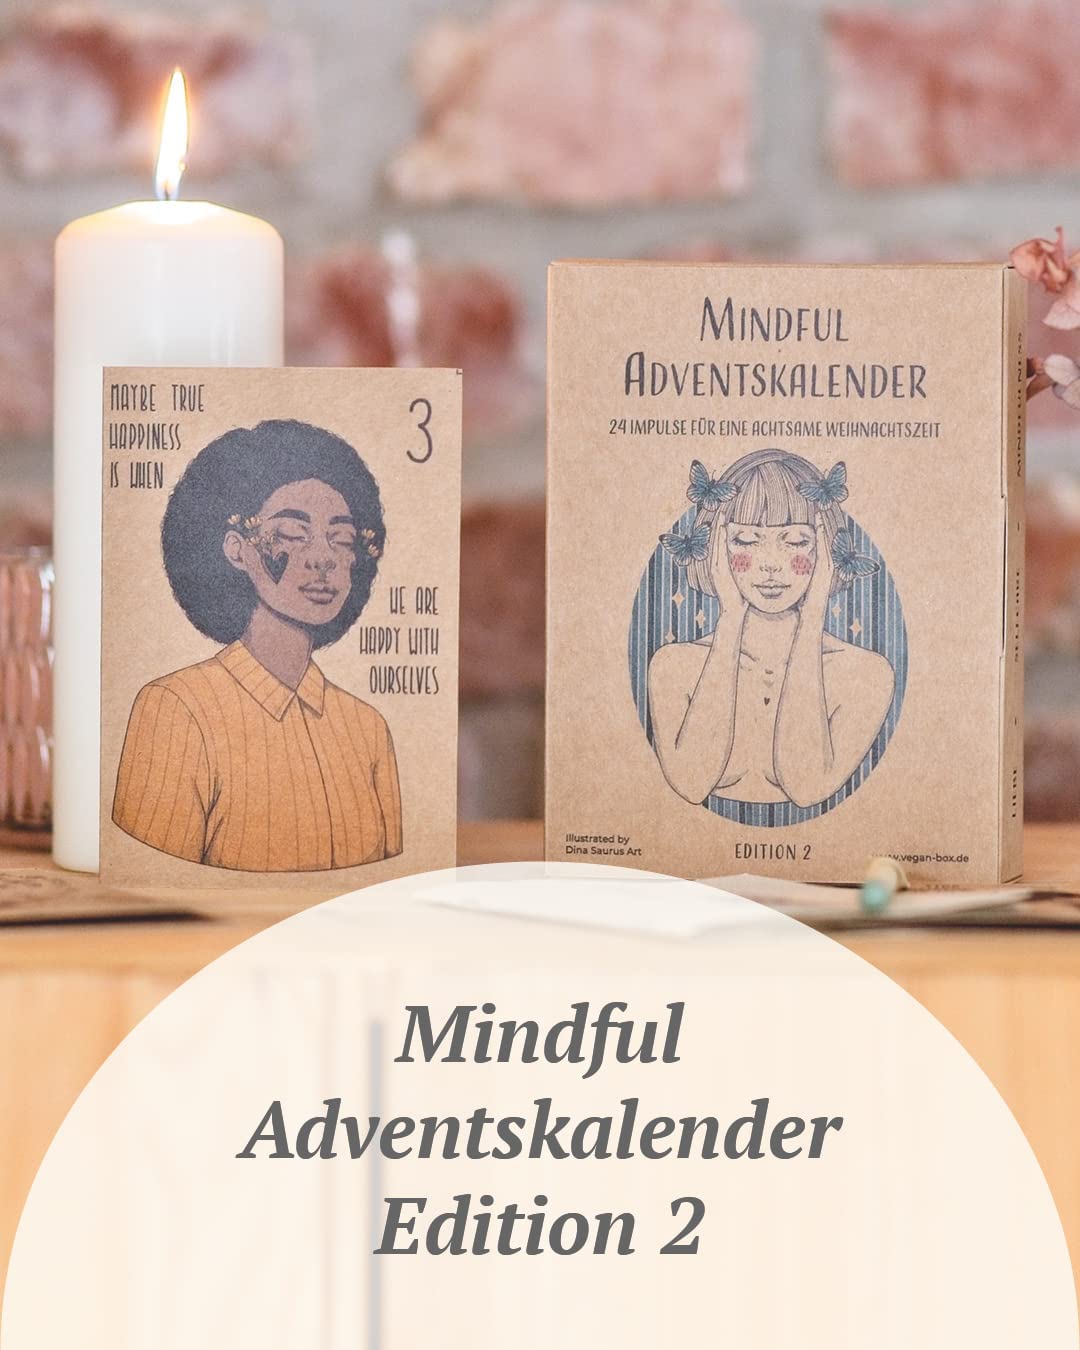 Mindful Adventskalender Edition 2